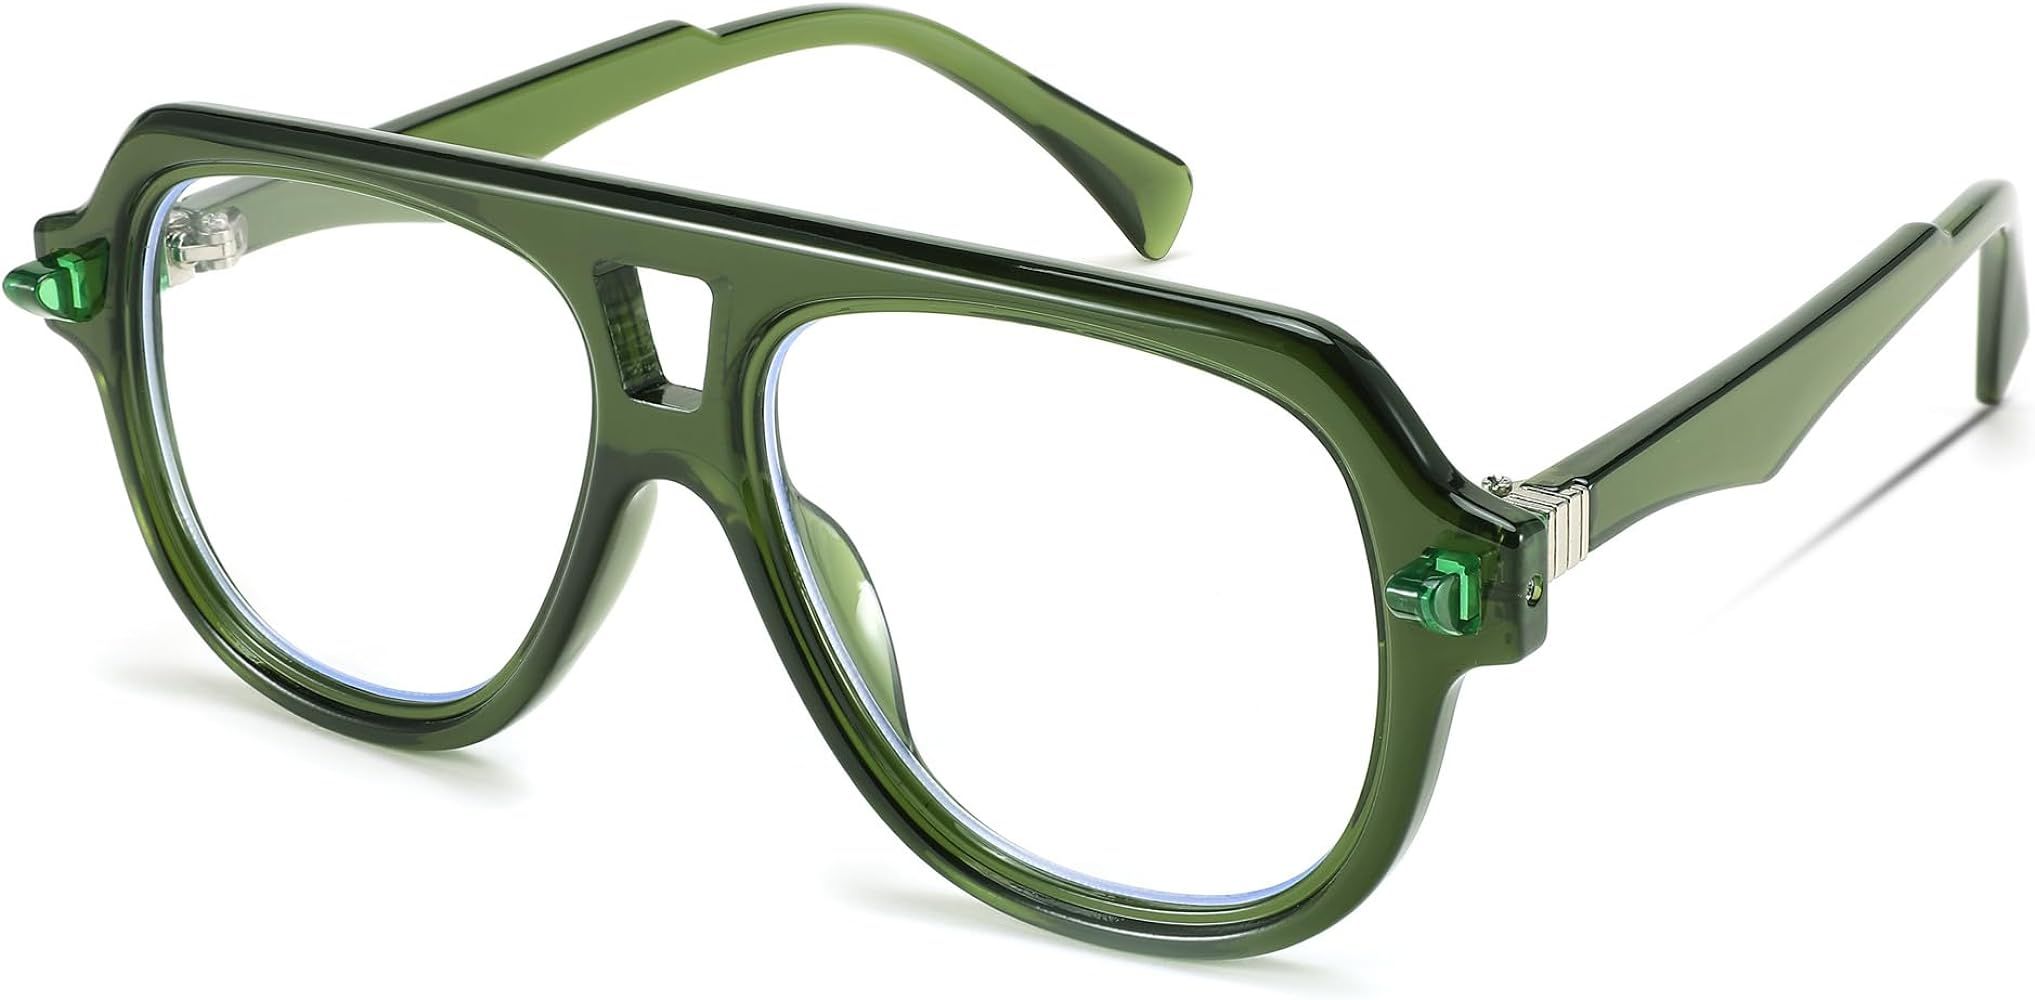 FEISEDY Aviator Frame Glasses for Women Men Blue Light Blocking Glasses Anti Glare Computer Eyegl... | Amazon (US)